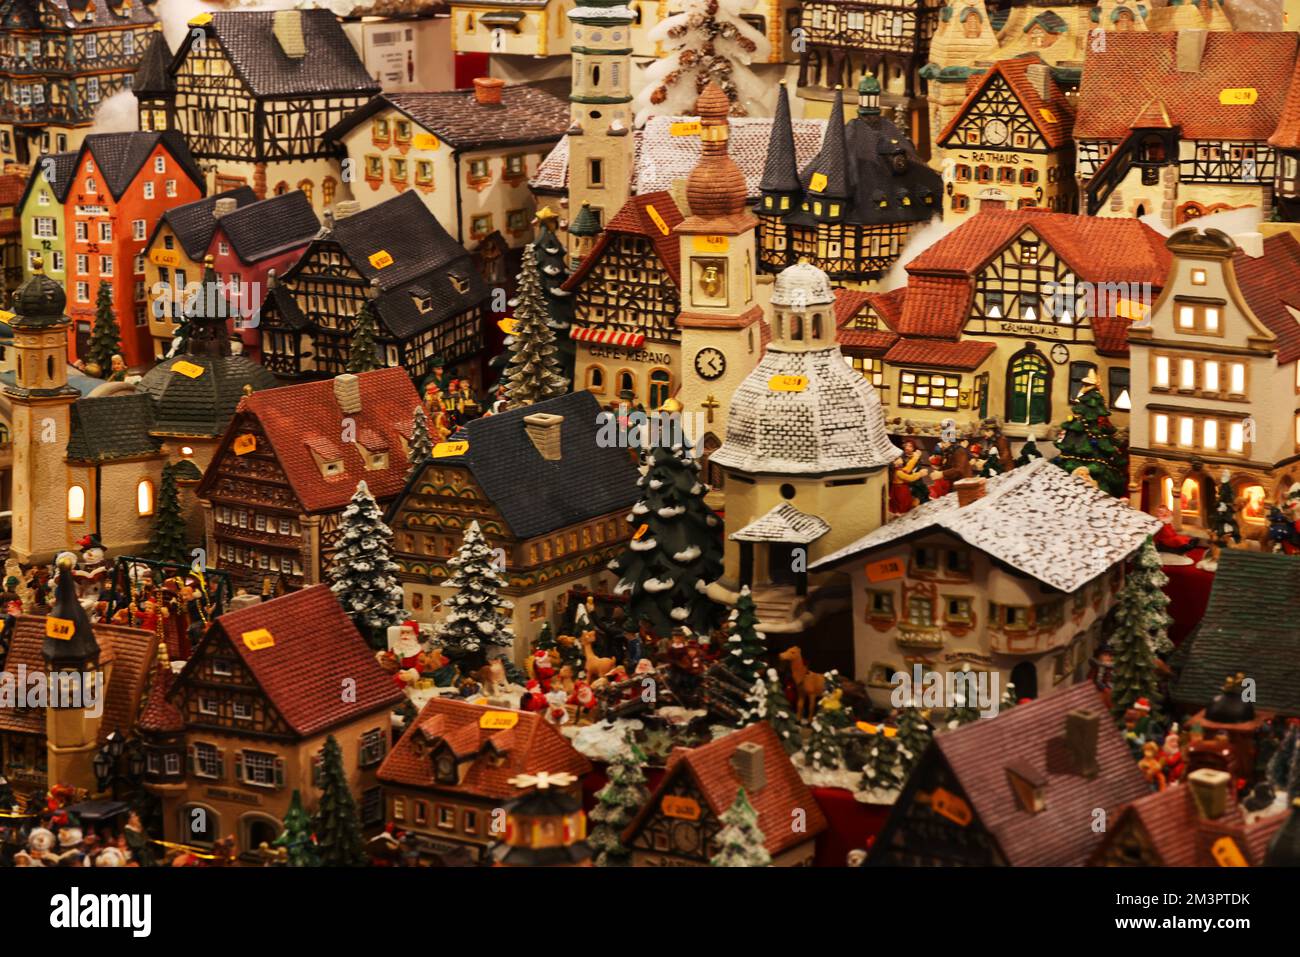 Christkindlmarkt, Weihnachtshaus, Marktstand, , Nürnberg, Nürnberger Weihnachtsmarkt, Nürnberger Christkindlesmarkt, Engel, Anhänger, Kugel, Glühwein, Stock Photo